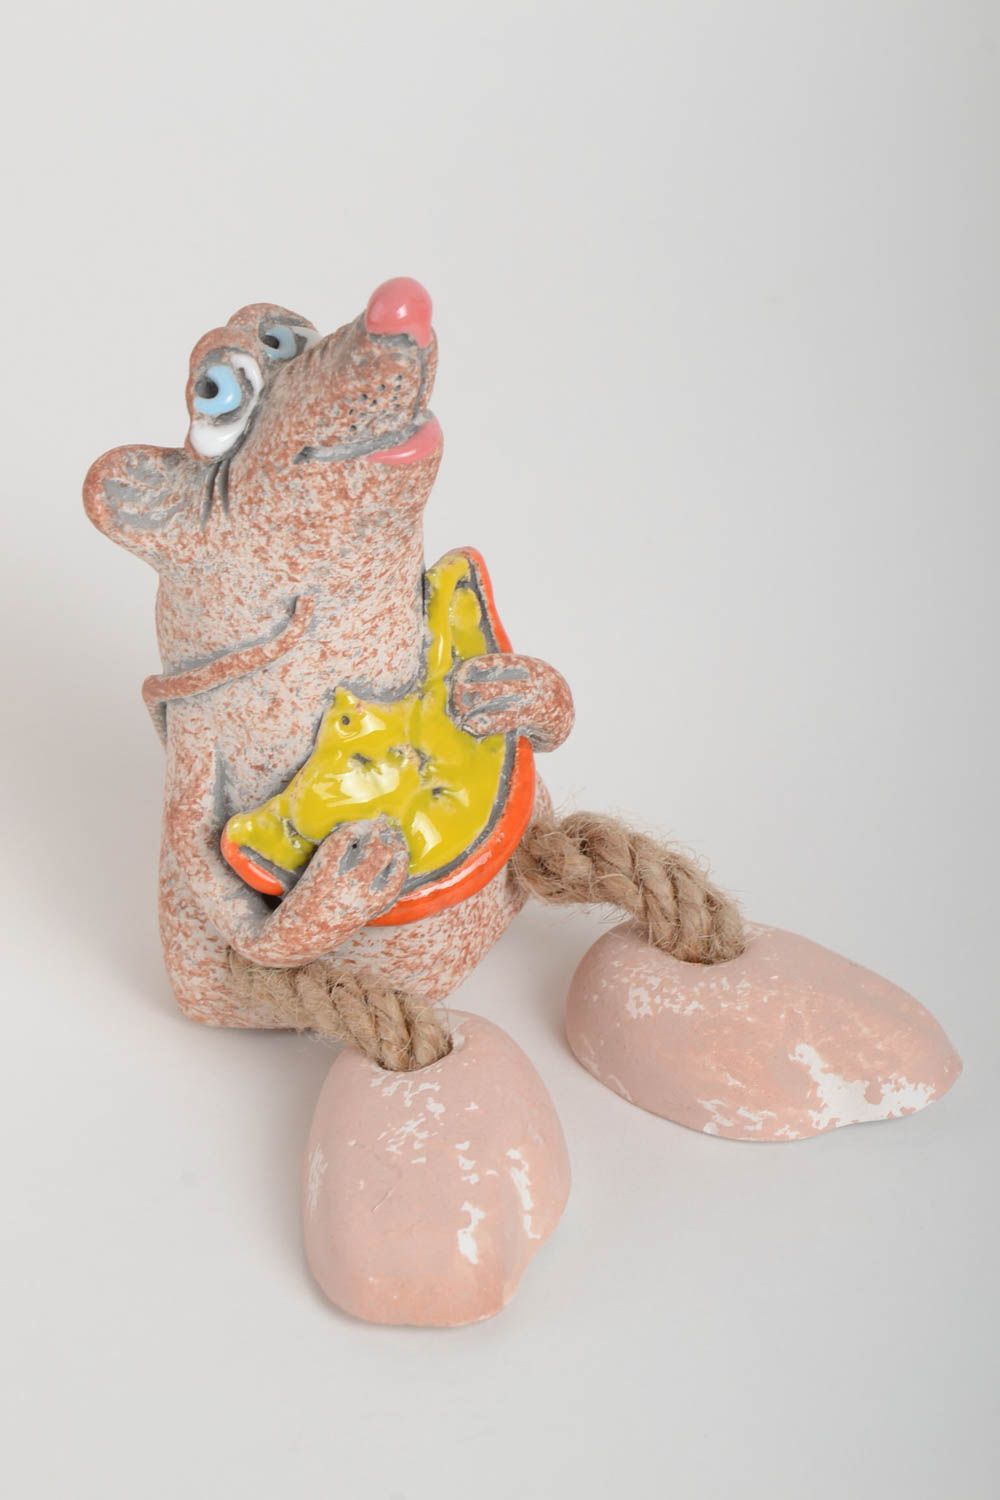 Handmade Keramik Spardose Geschenk für Kinder Haus Deko aus Ton Maus mit Käse foto 2